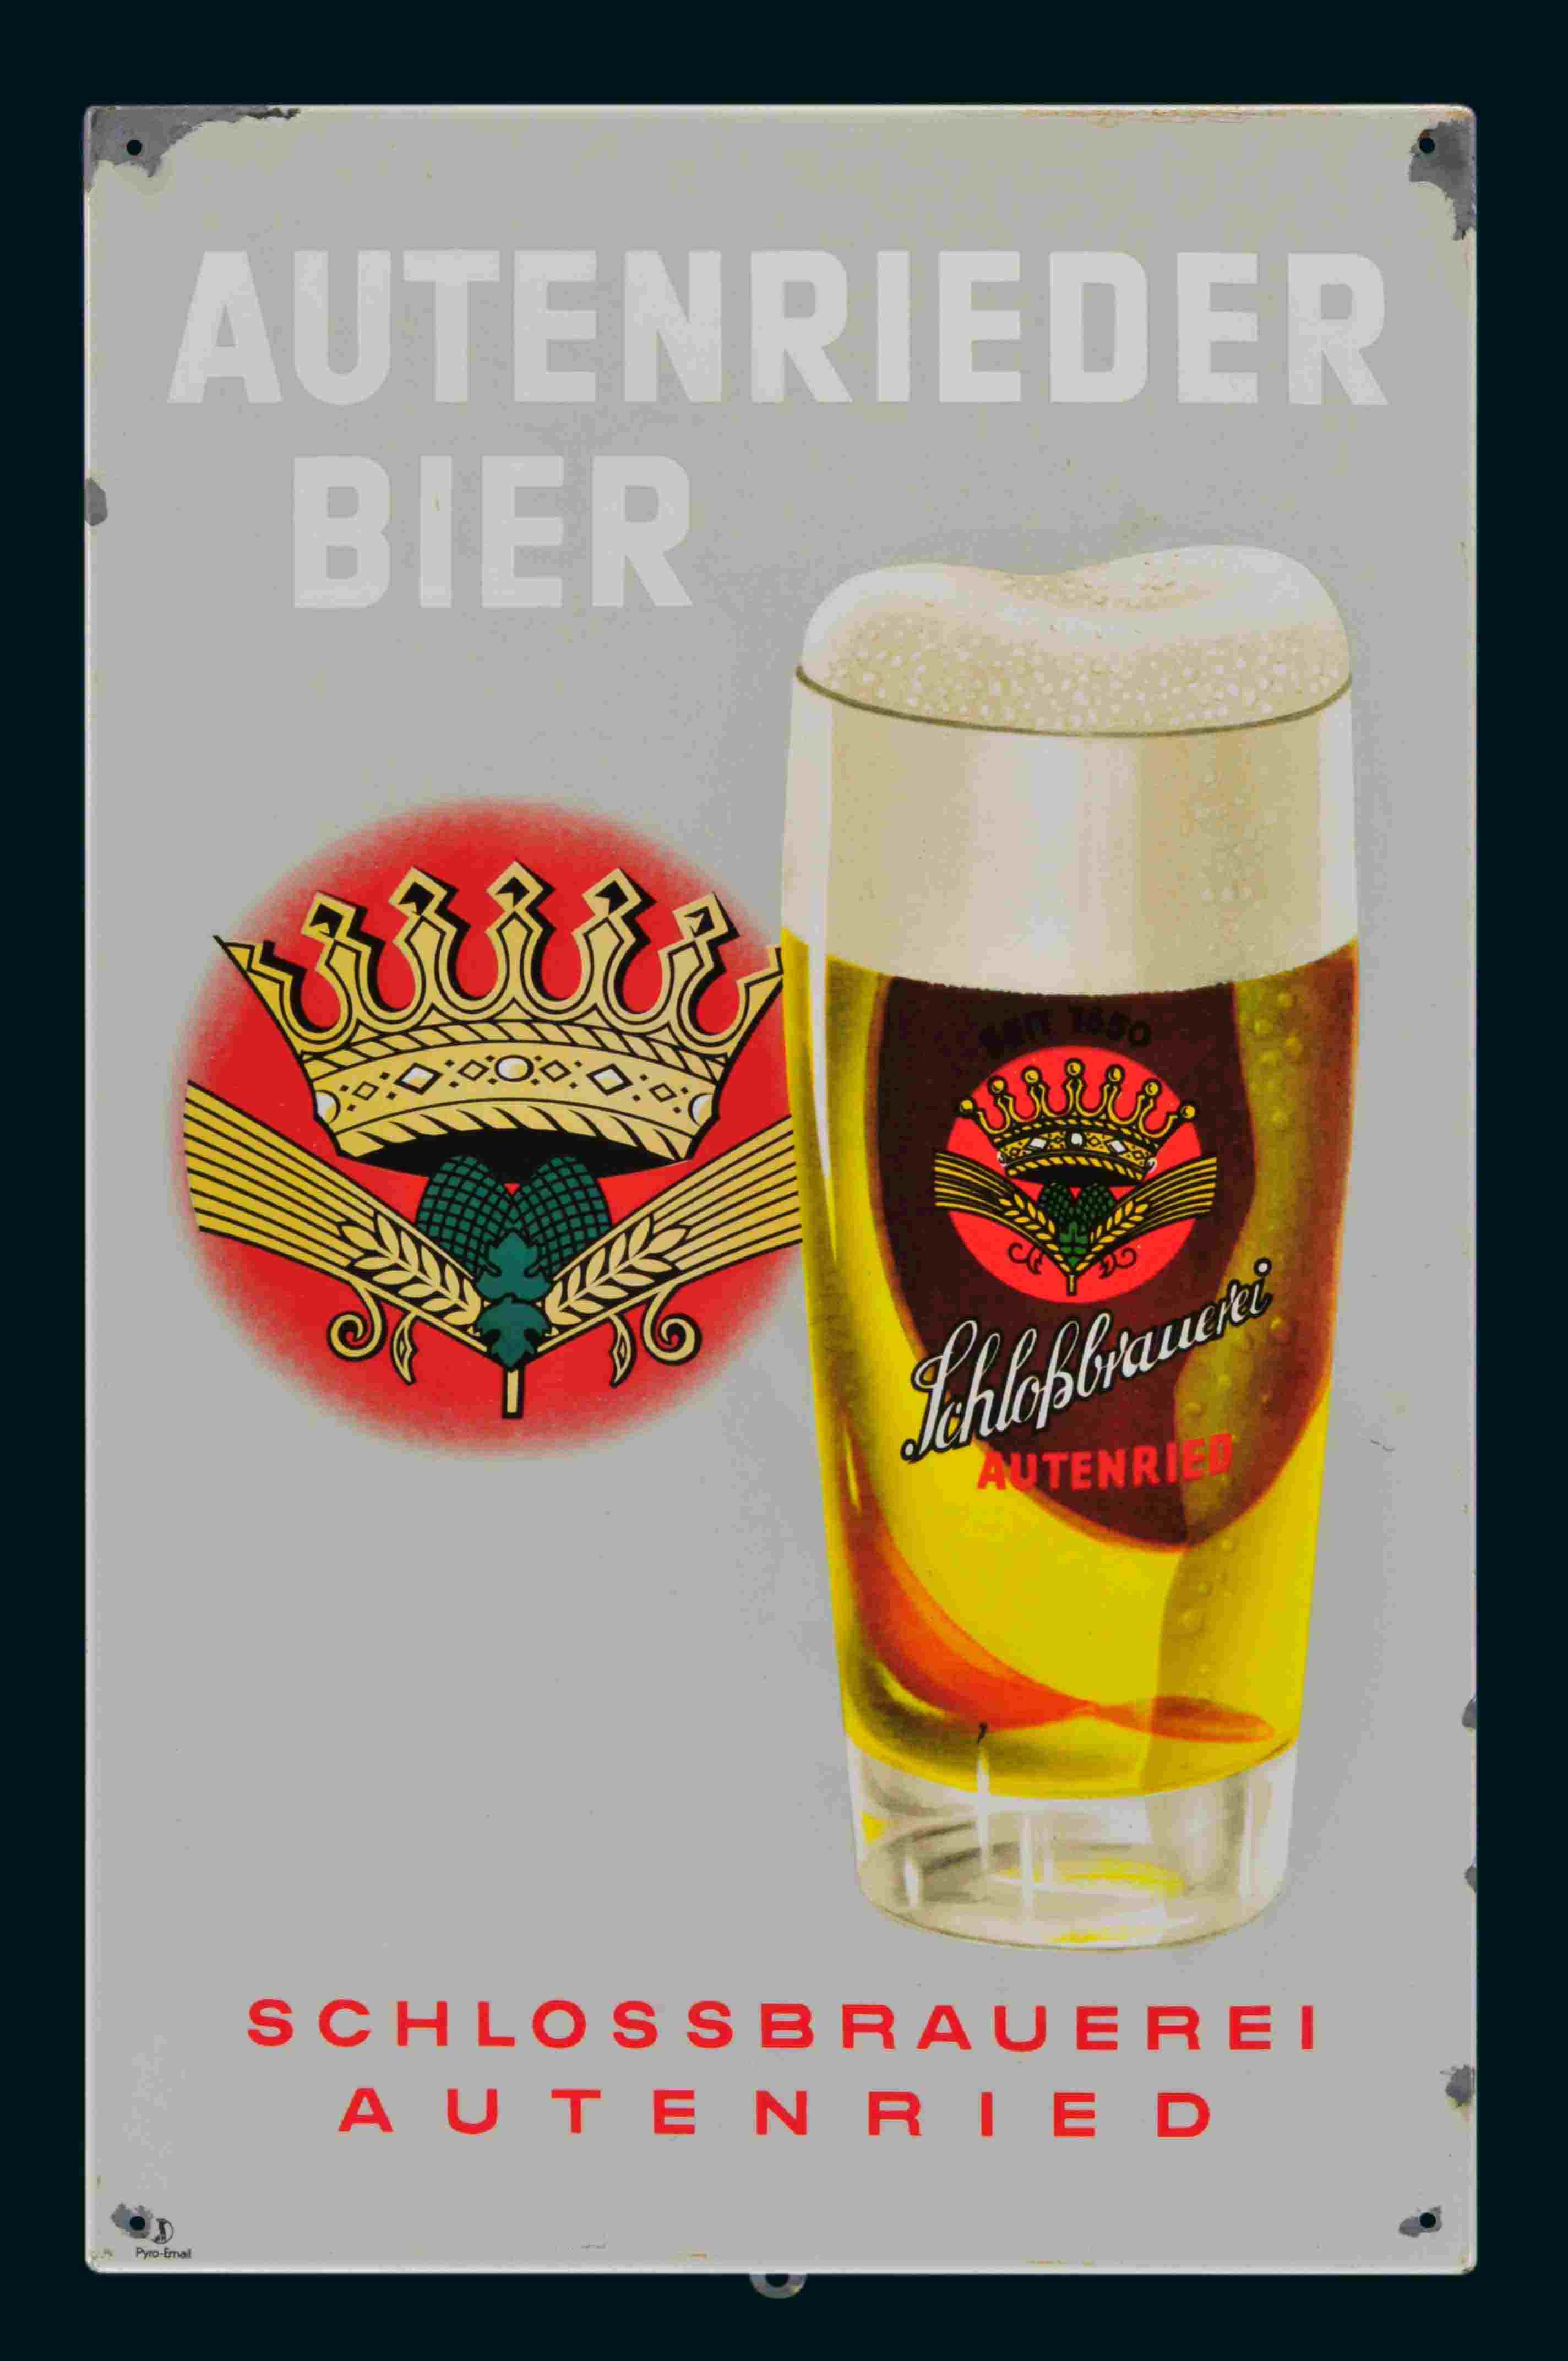 Schlossbrauerei Autenrieder Bier 